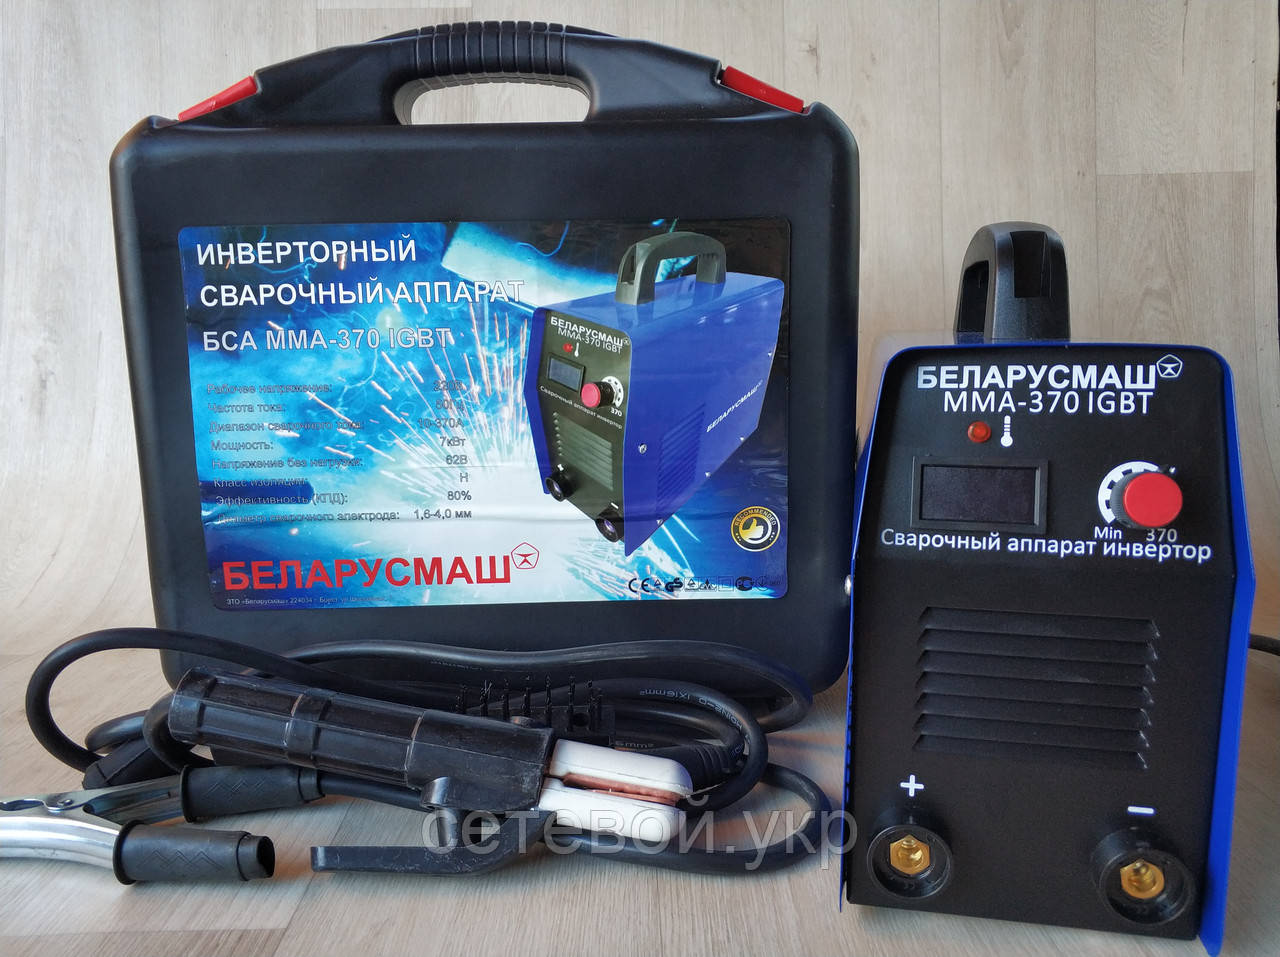 Зварювання інверторна Беларусмаш БСА ММА-370 IGBT В КЕЙСІ зварювальний апарат